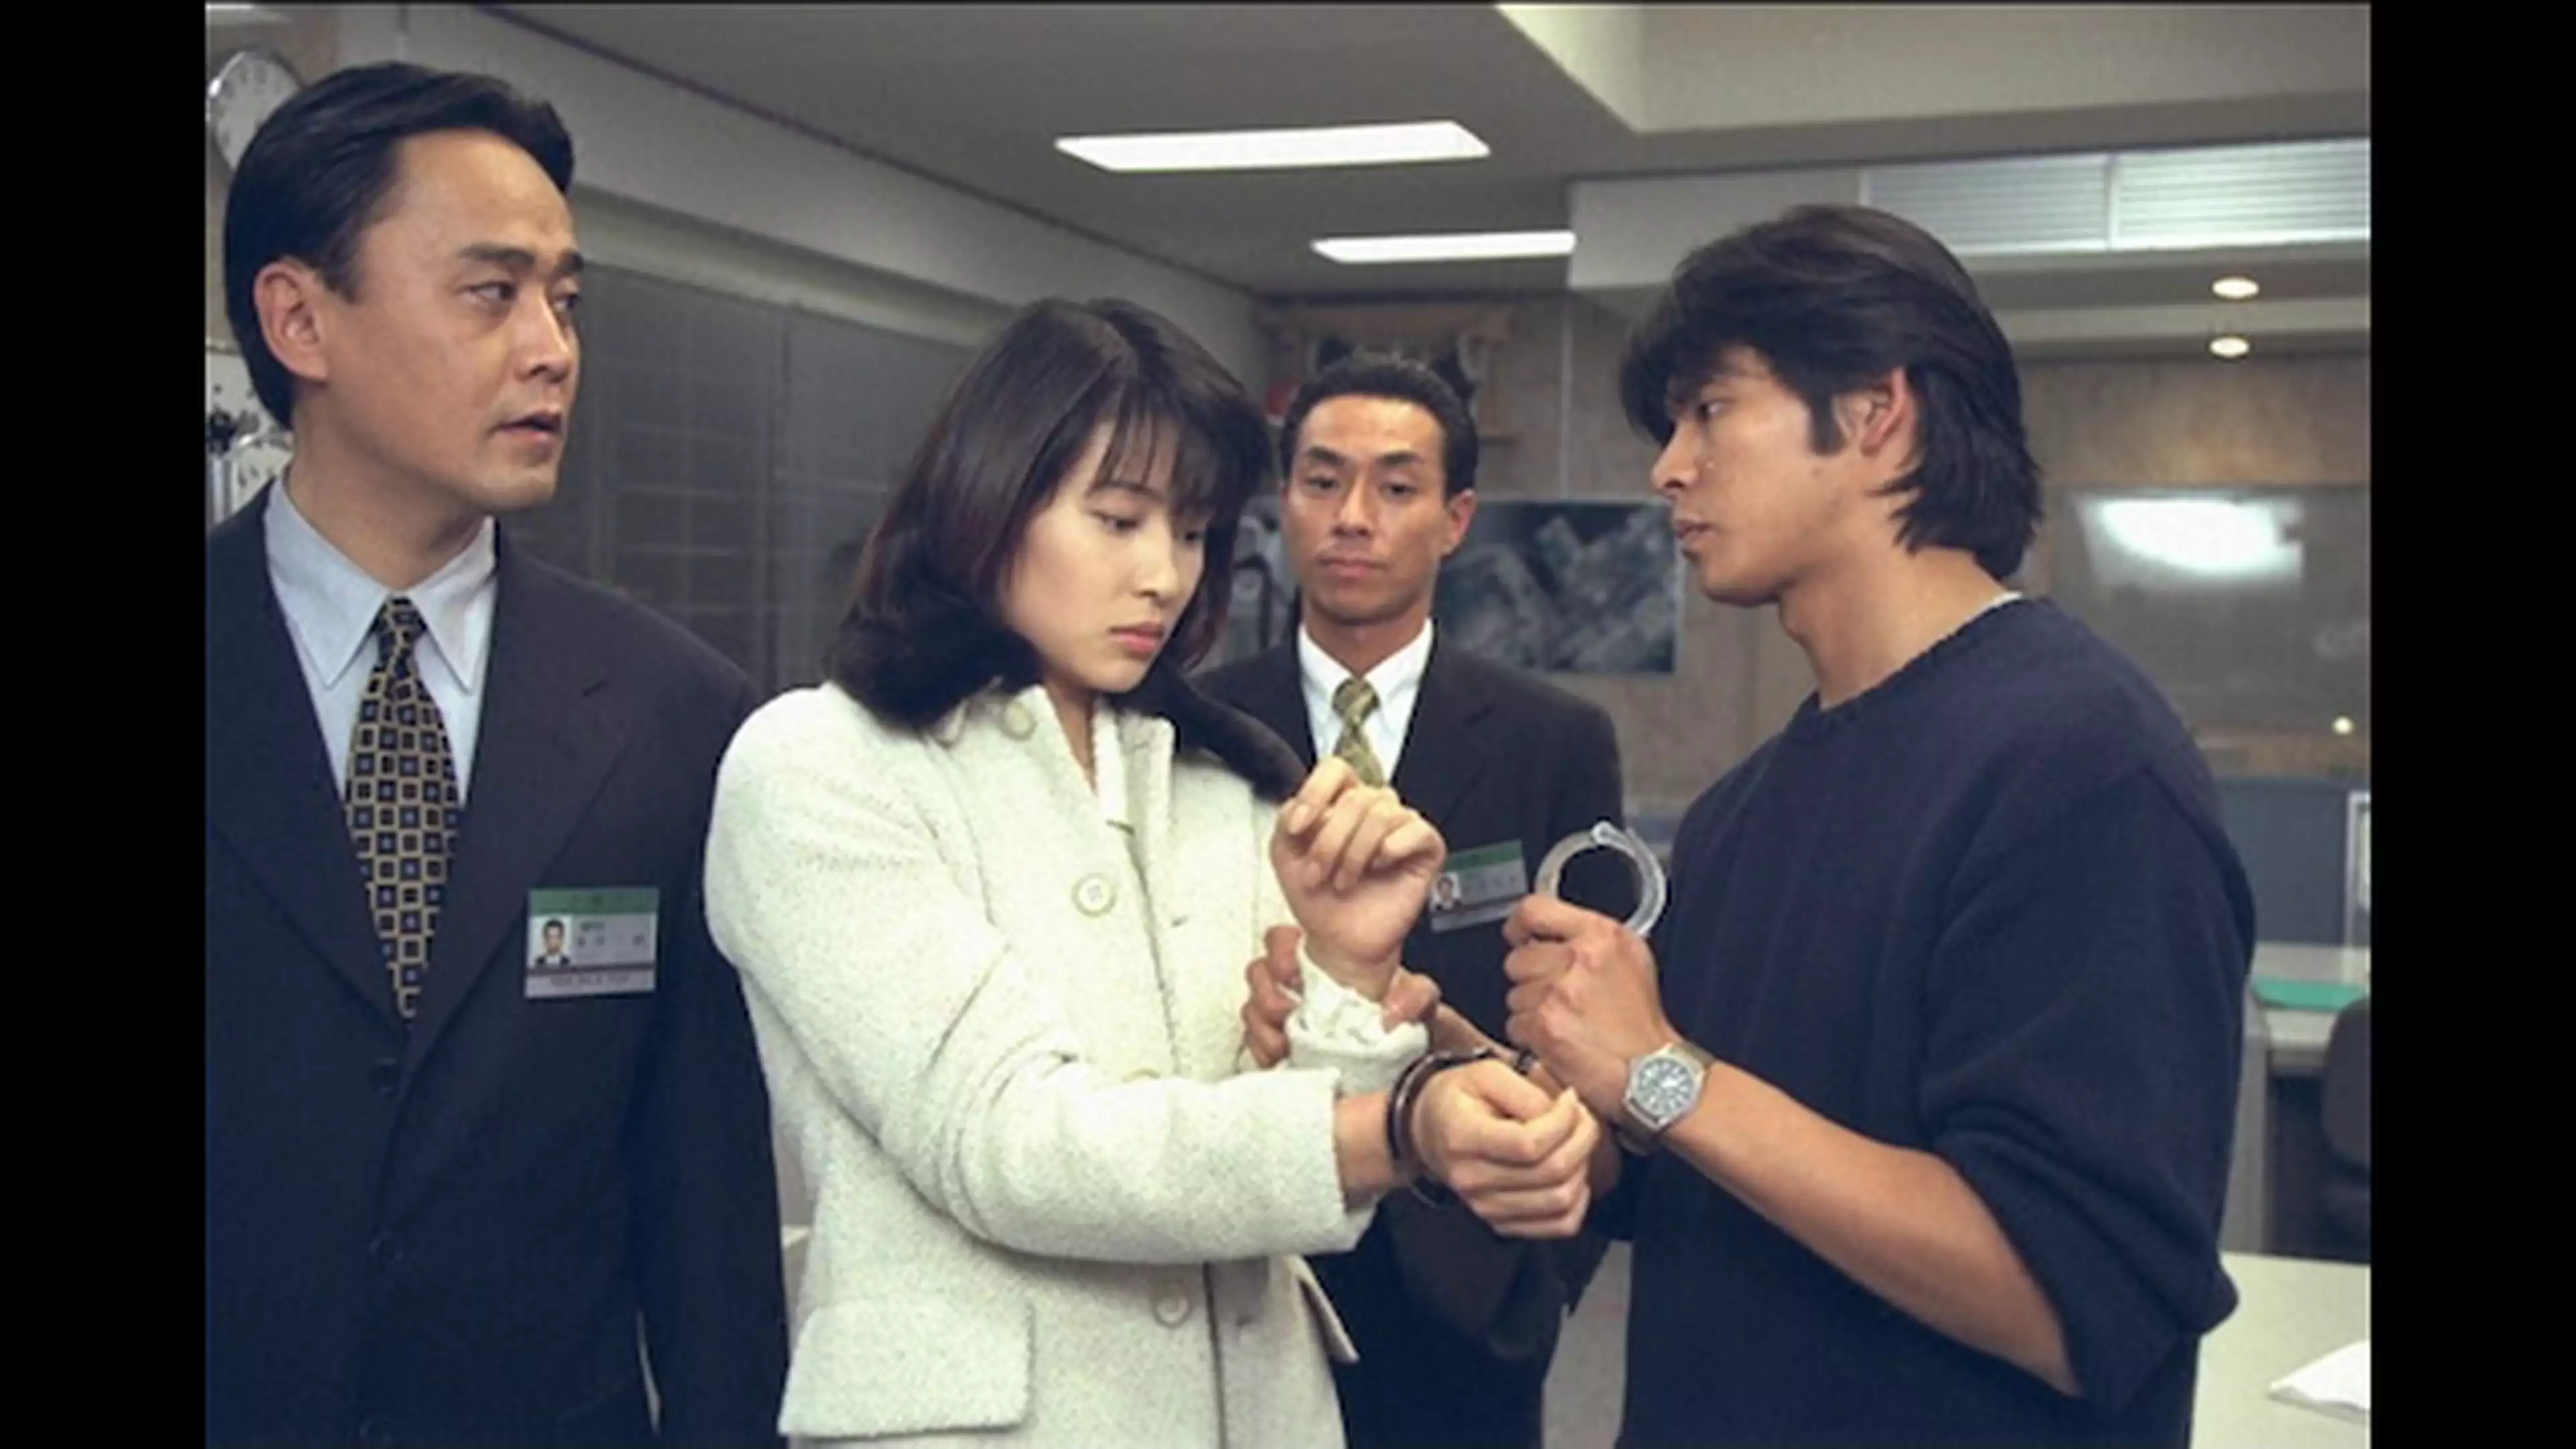 踊る大捜査線 7 タイムリミットは48時間 国内ドラマ 1997年 の動画視聴 あらすじ U Next